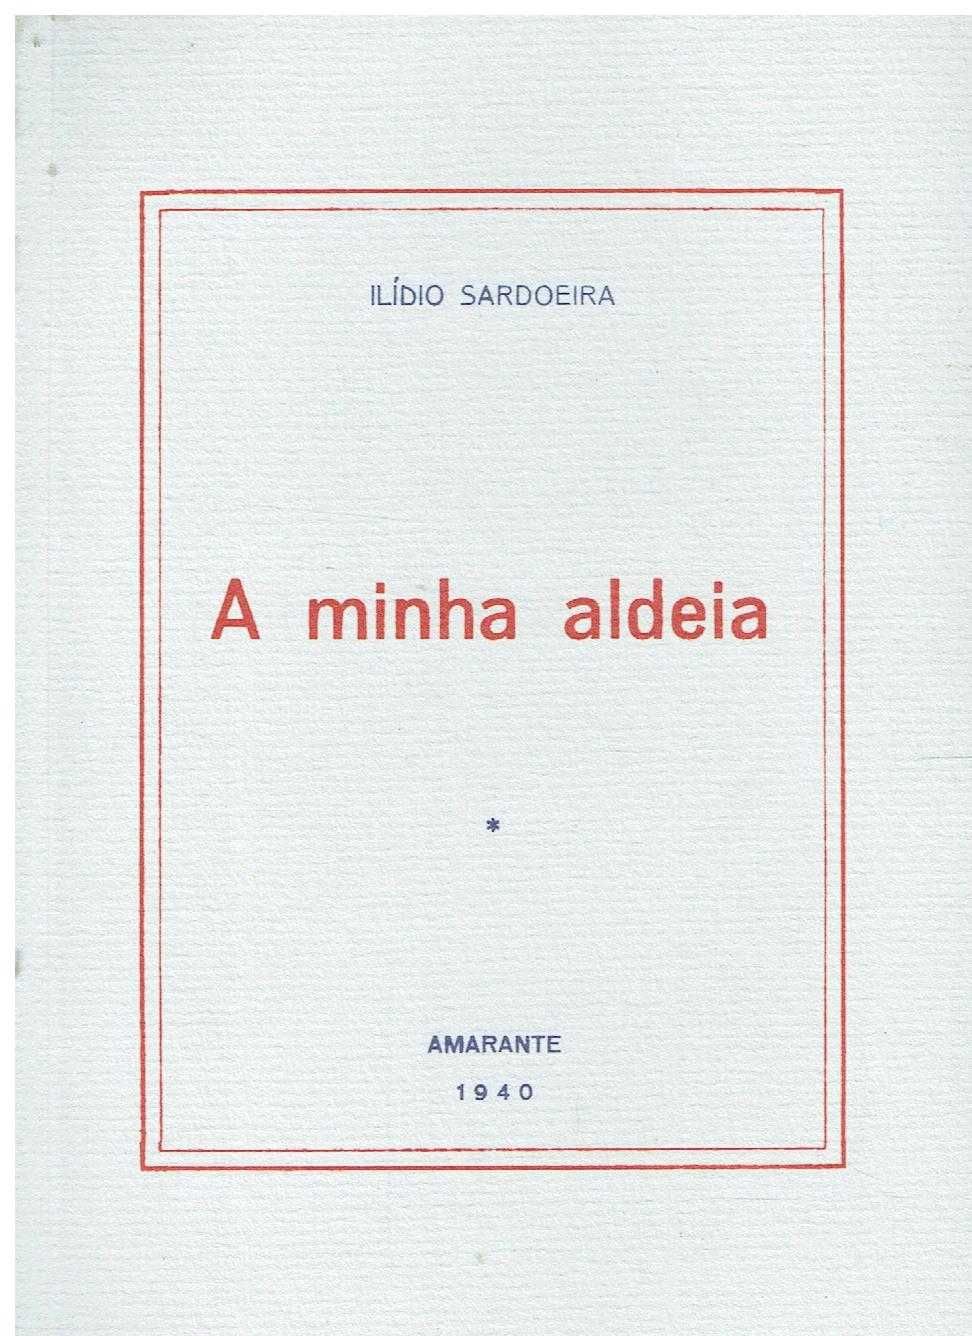 12389

Livros de Ilídio Sardoeira